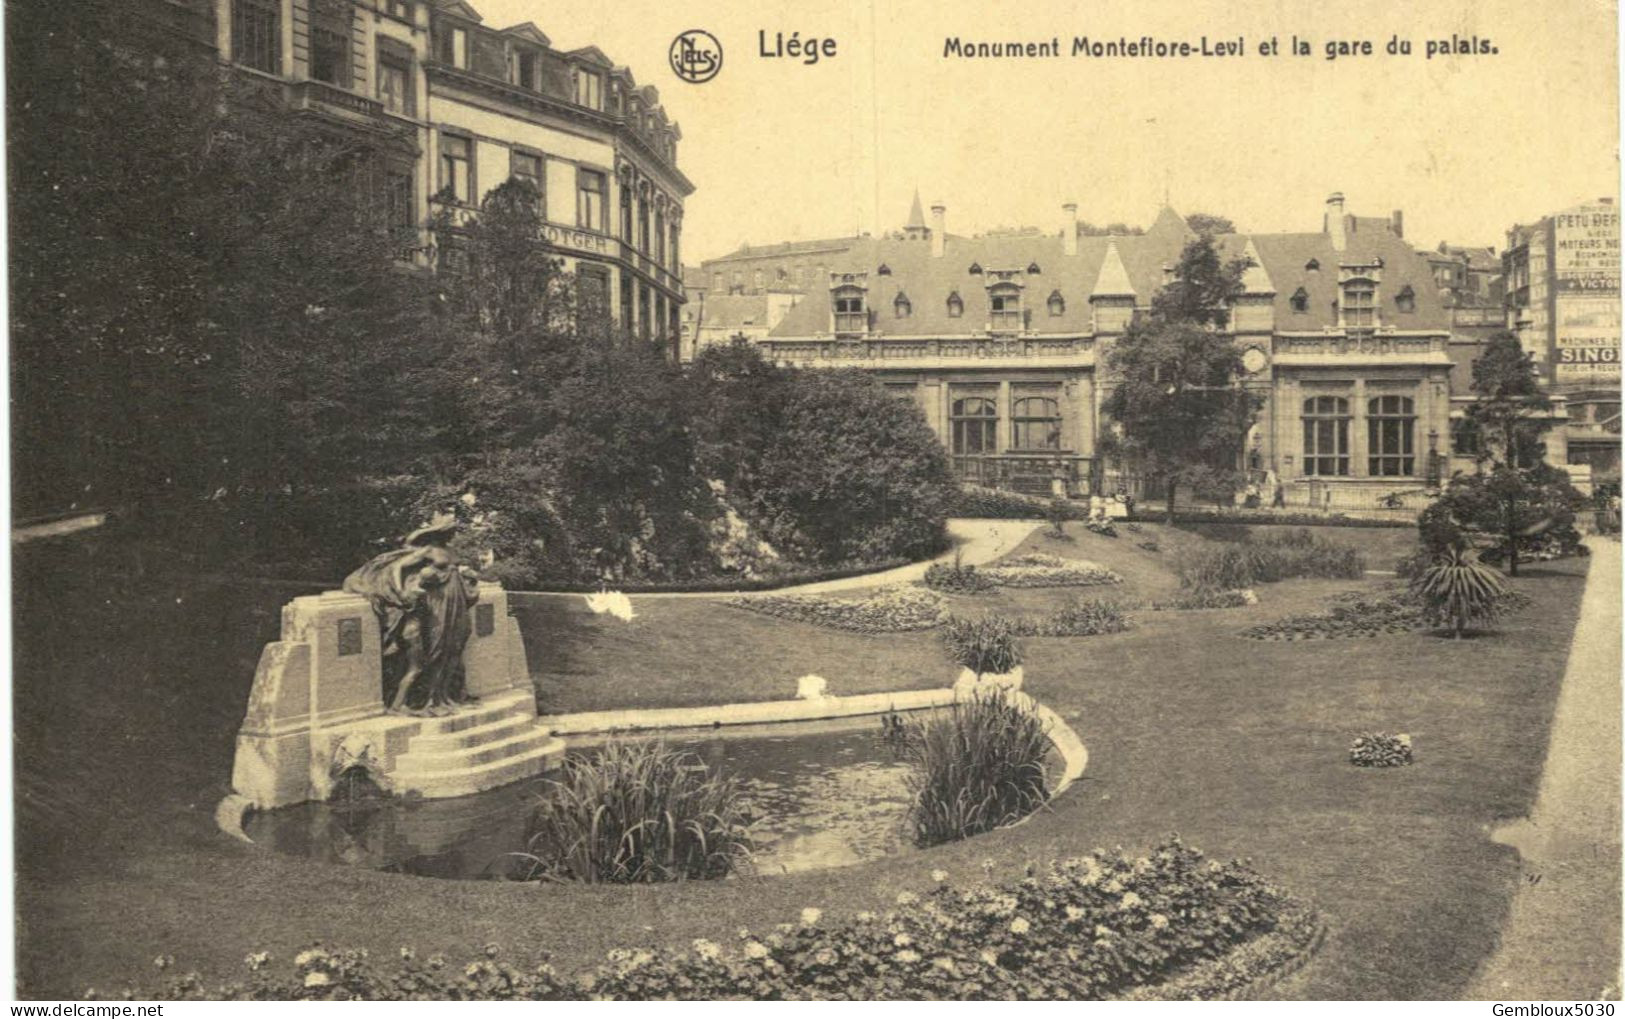 (01) Liège Ville lot de 10 cartes postales anciennes